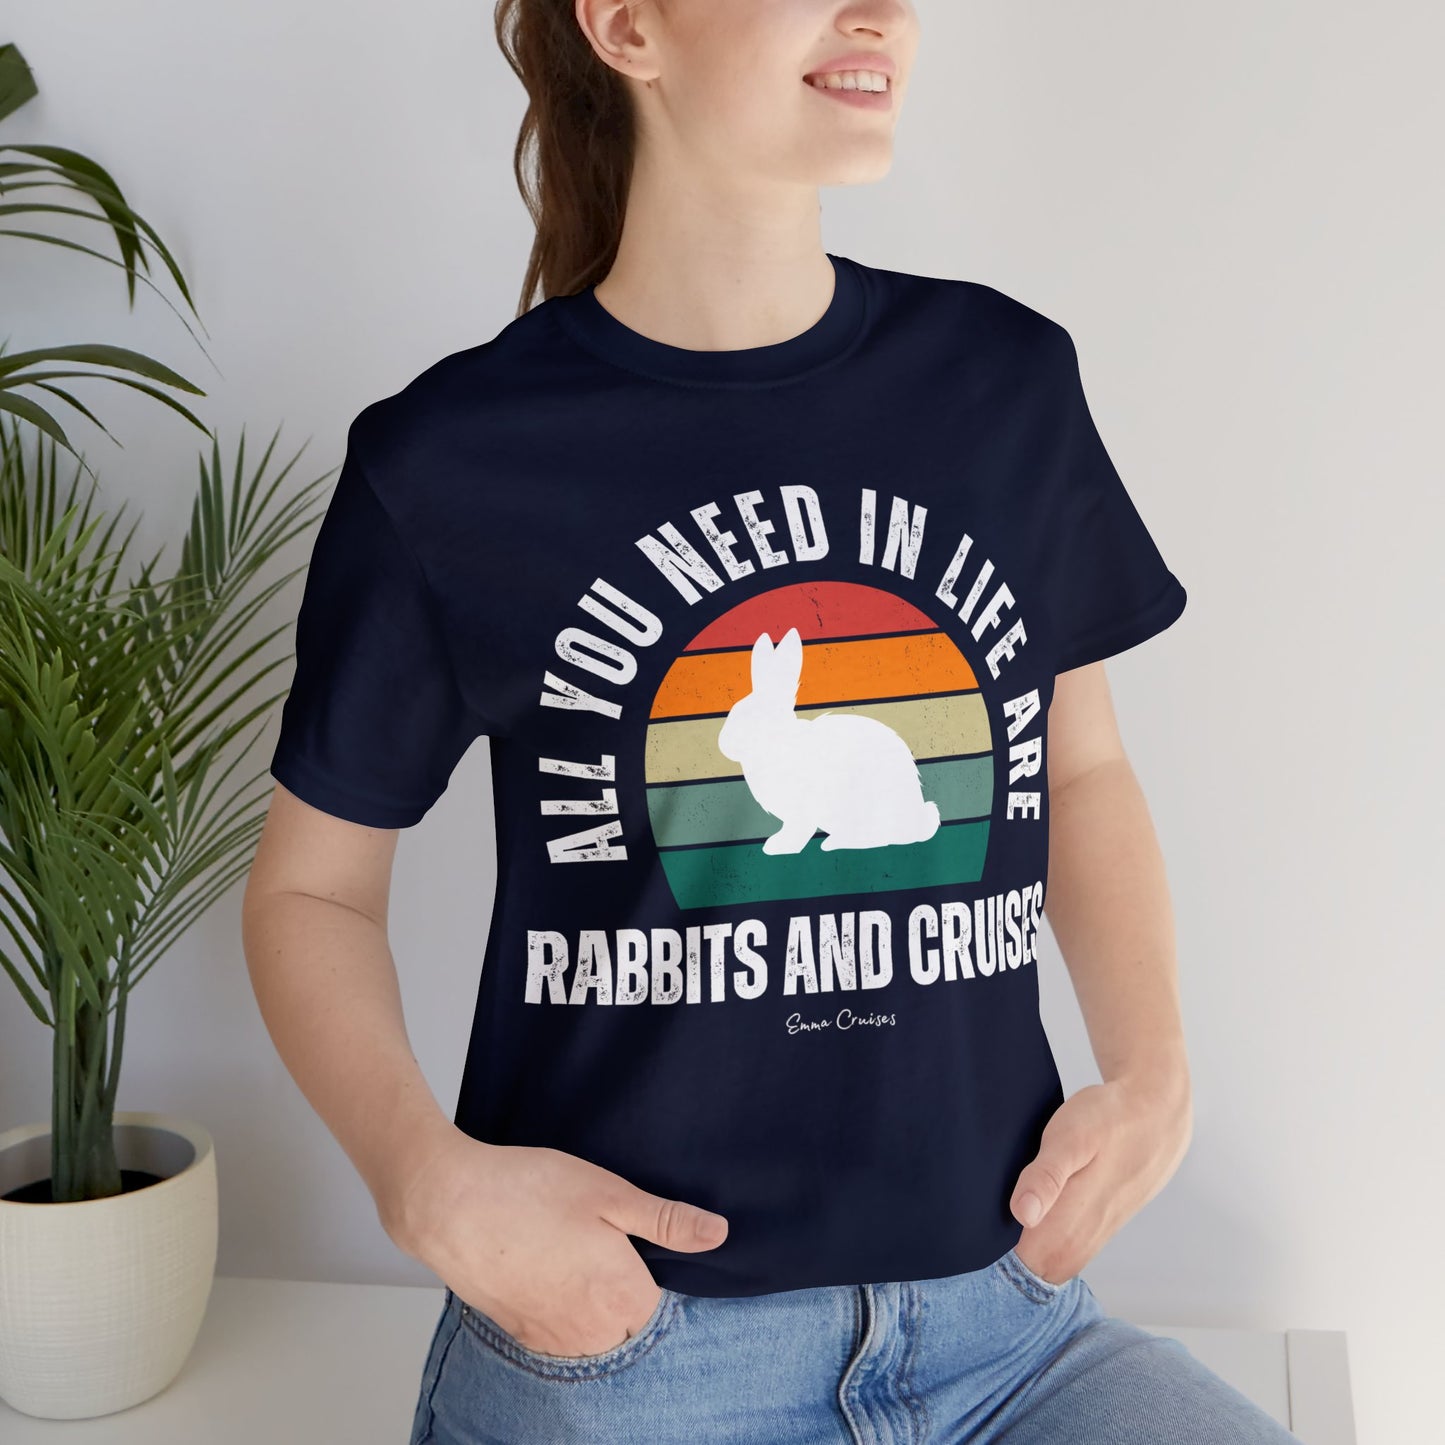 Rabbits and Cruises - UNISEX T-Shirt (UK)